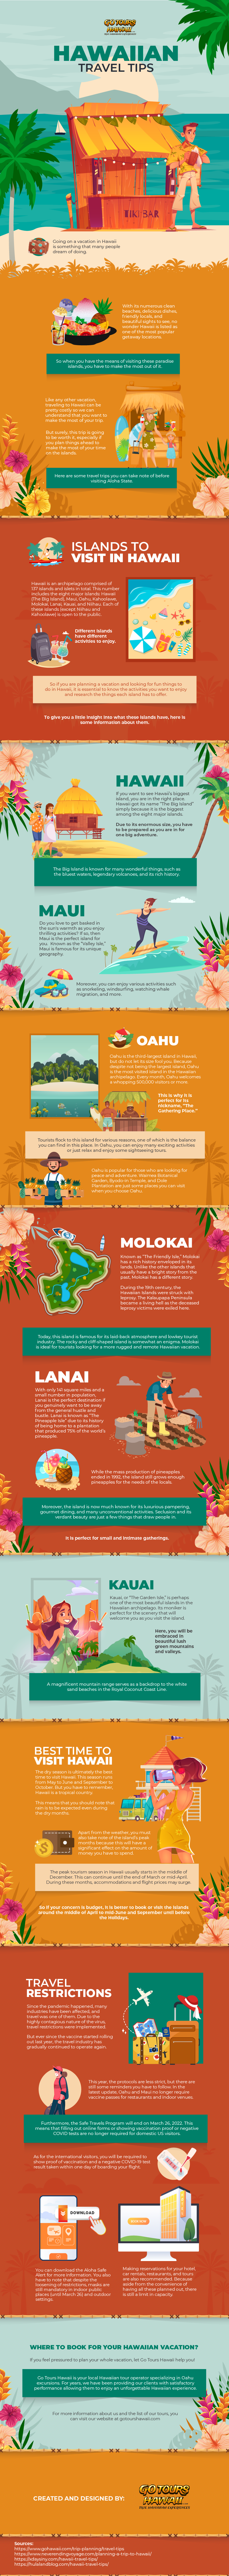 Hawaiian Travel Tips - Infographic ImageTE$IK93625$%